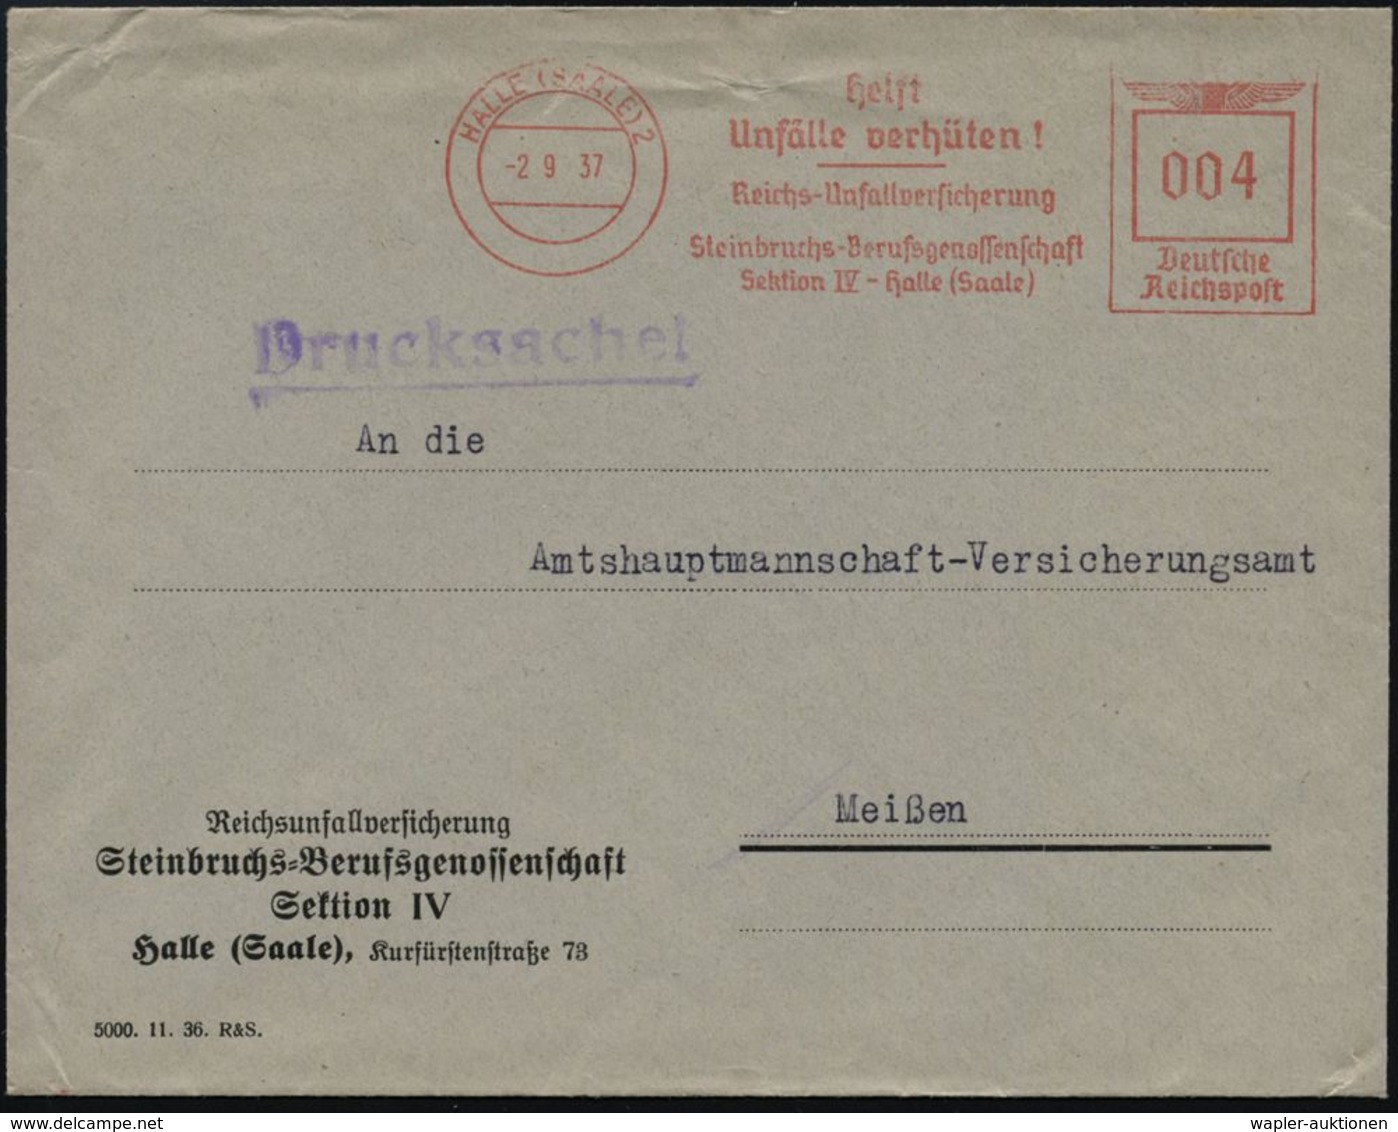 GEOLOGIE / MINERALIEN / ERZE : HALLE (SAALE) 2/ Helft/ Unfälle Verhüten!/ ..Steinbruchs-Berufsgenossenschaft.. 1937 (2.9 - Autres & Non Classés